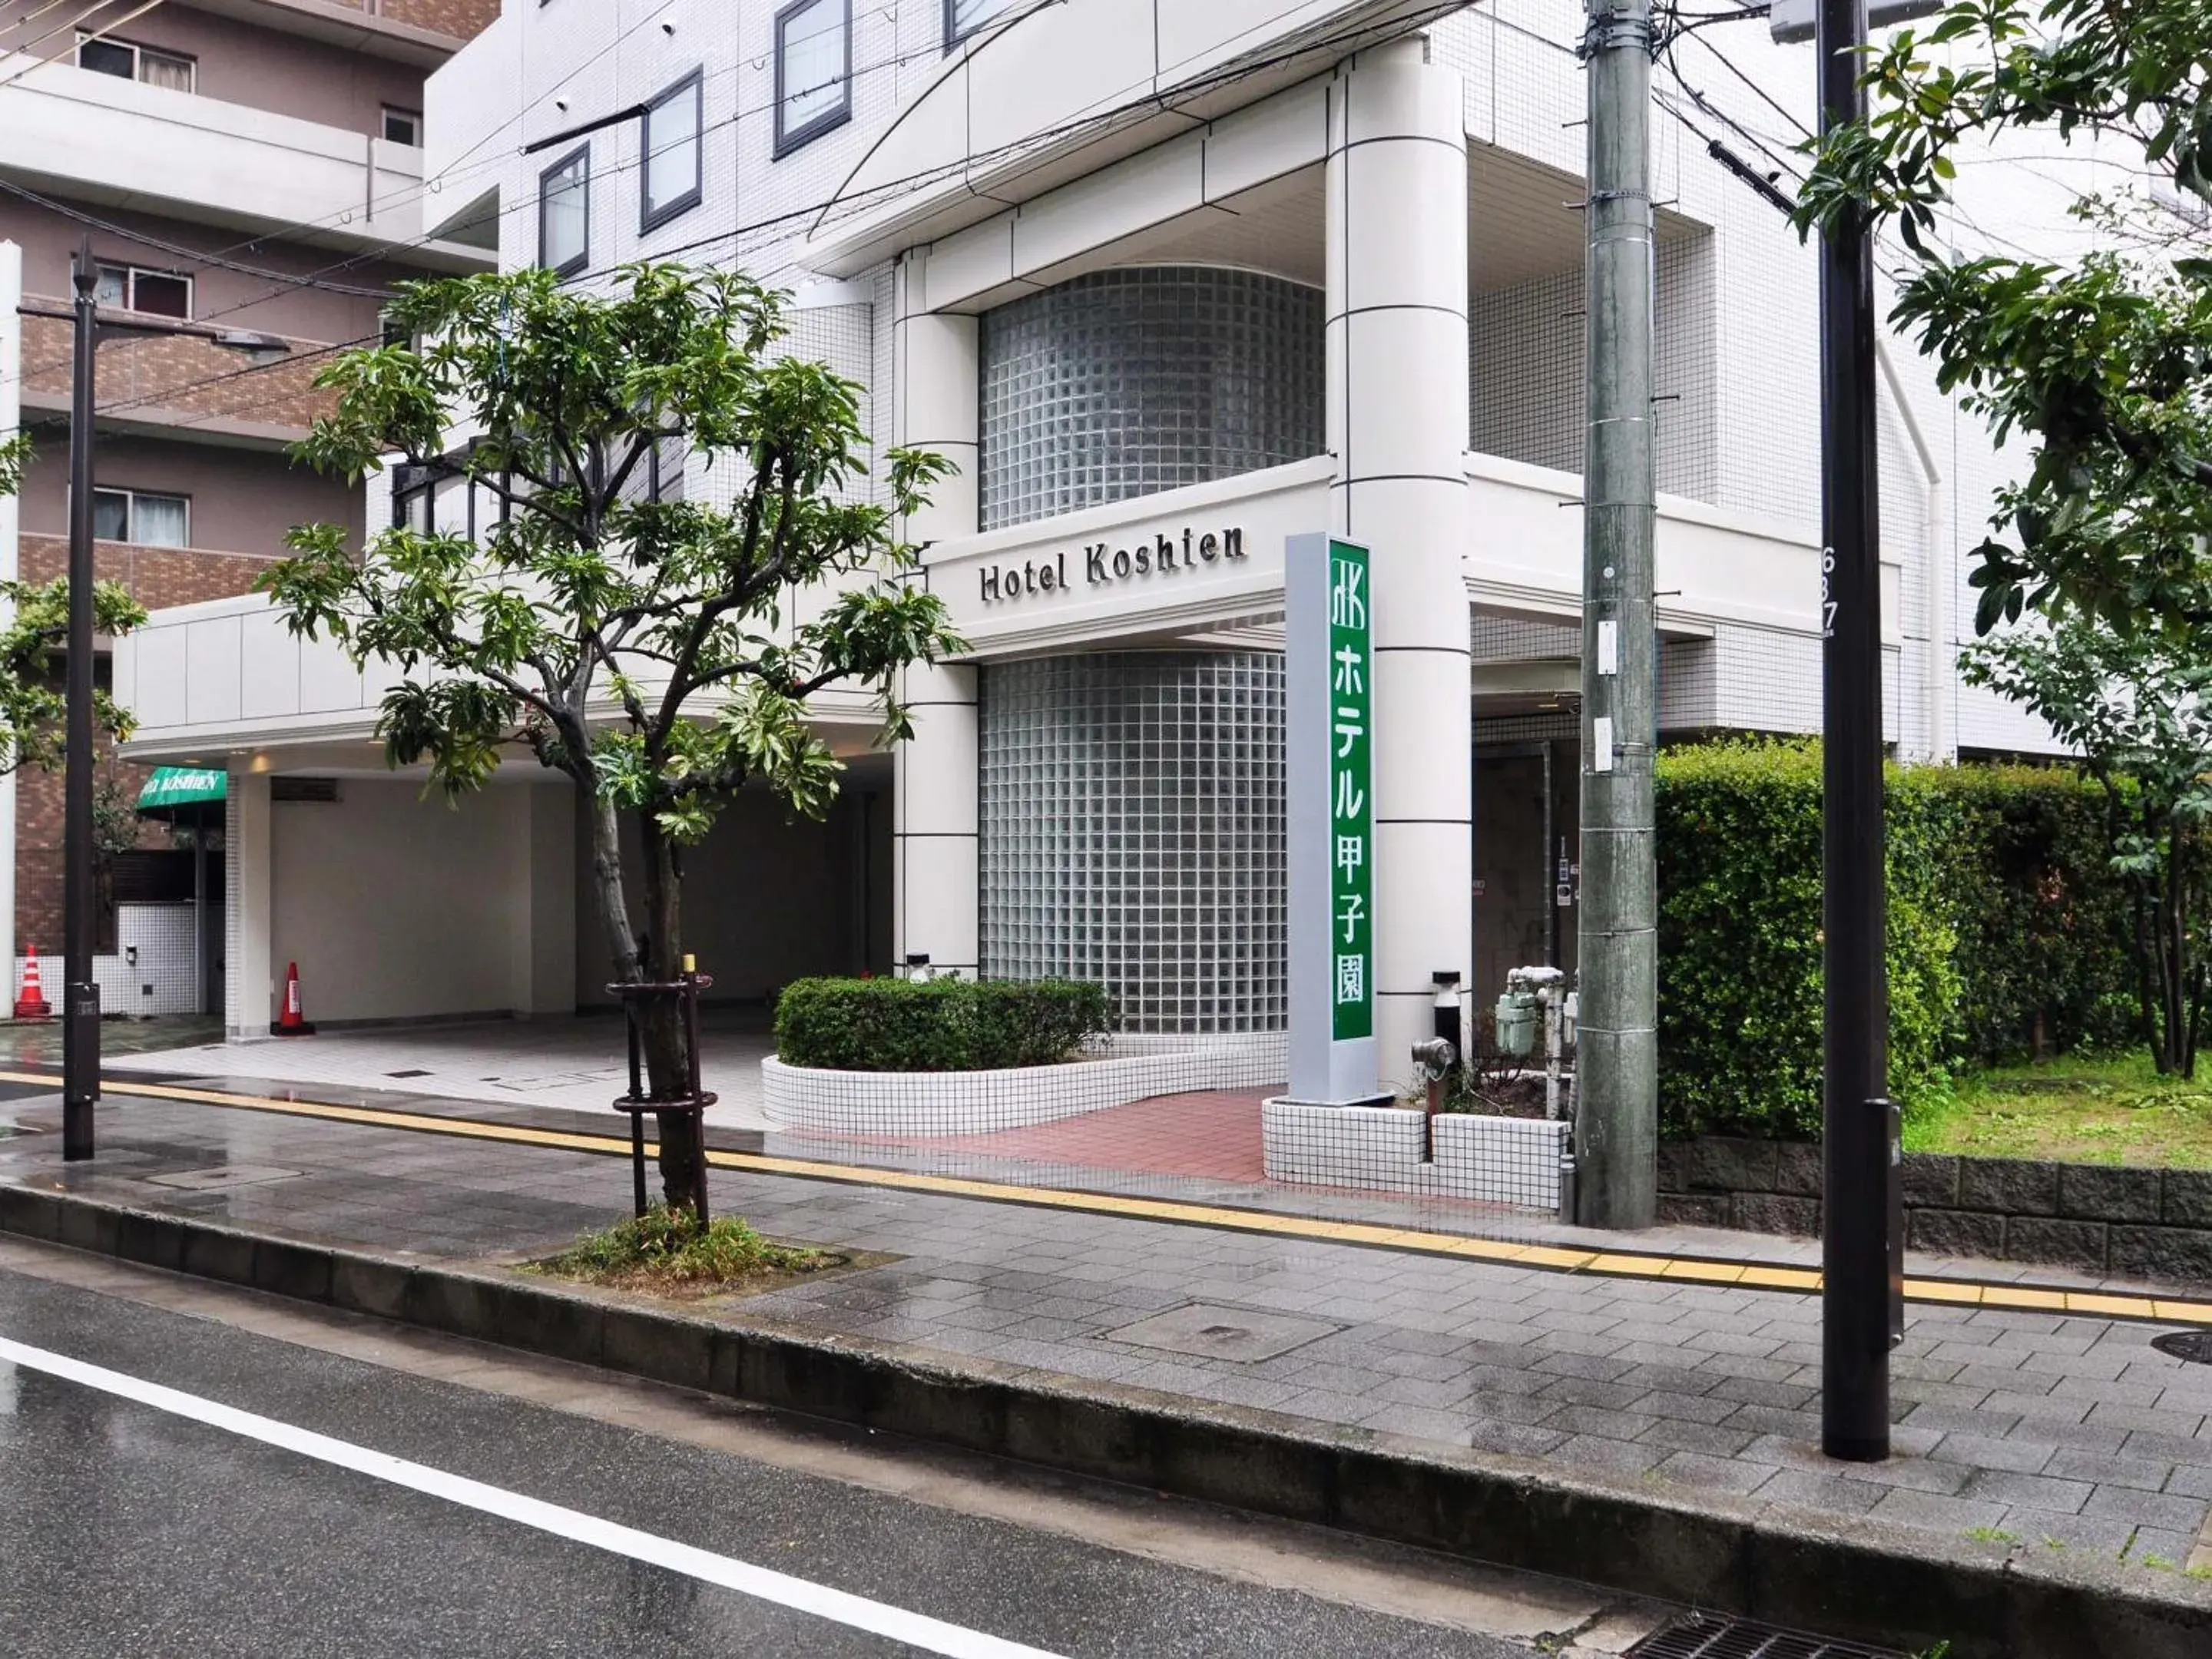 Facade/entrance, Property Building in Hotel Koshien